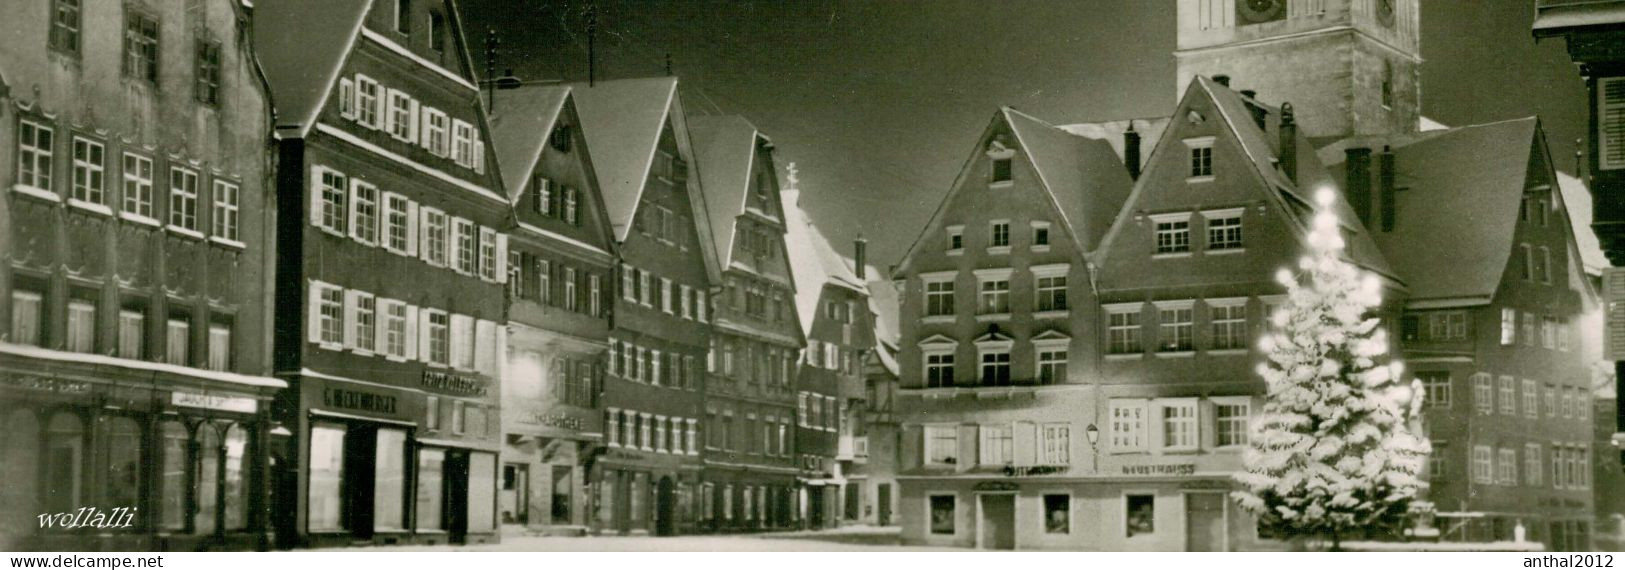 Superrar Nachtaufnahme Biberach Riss Winter Apotheke 21.12.1959 Weihnachtsbaum - Biberach